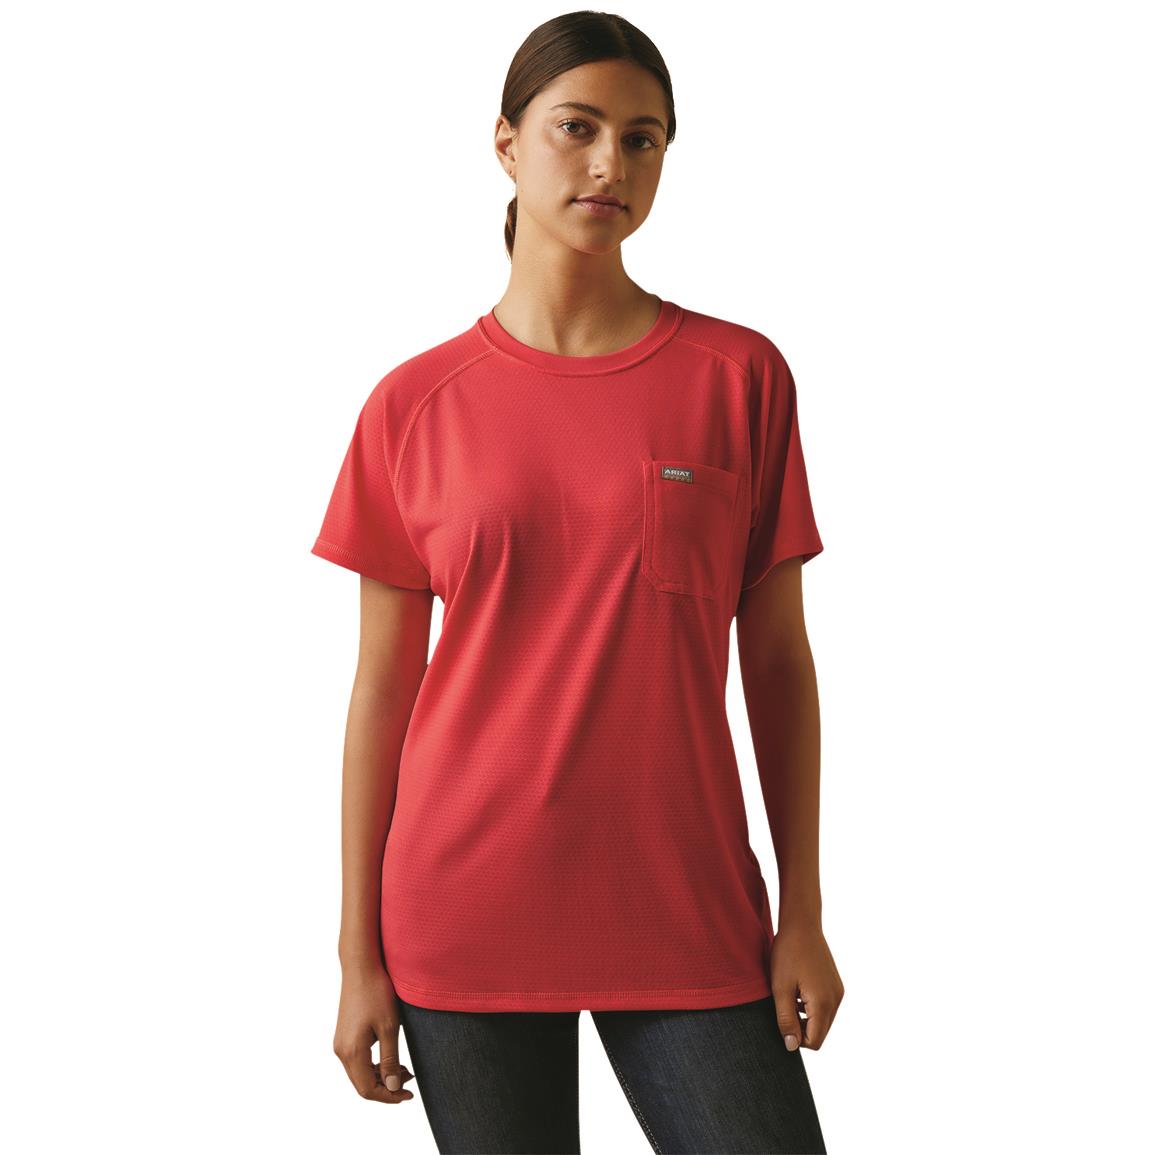 Ariat Women's Rebar Heat Fighter T-Shirt, Teaberry / Alloy